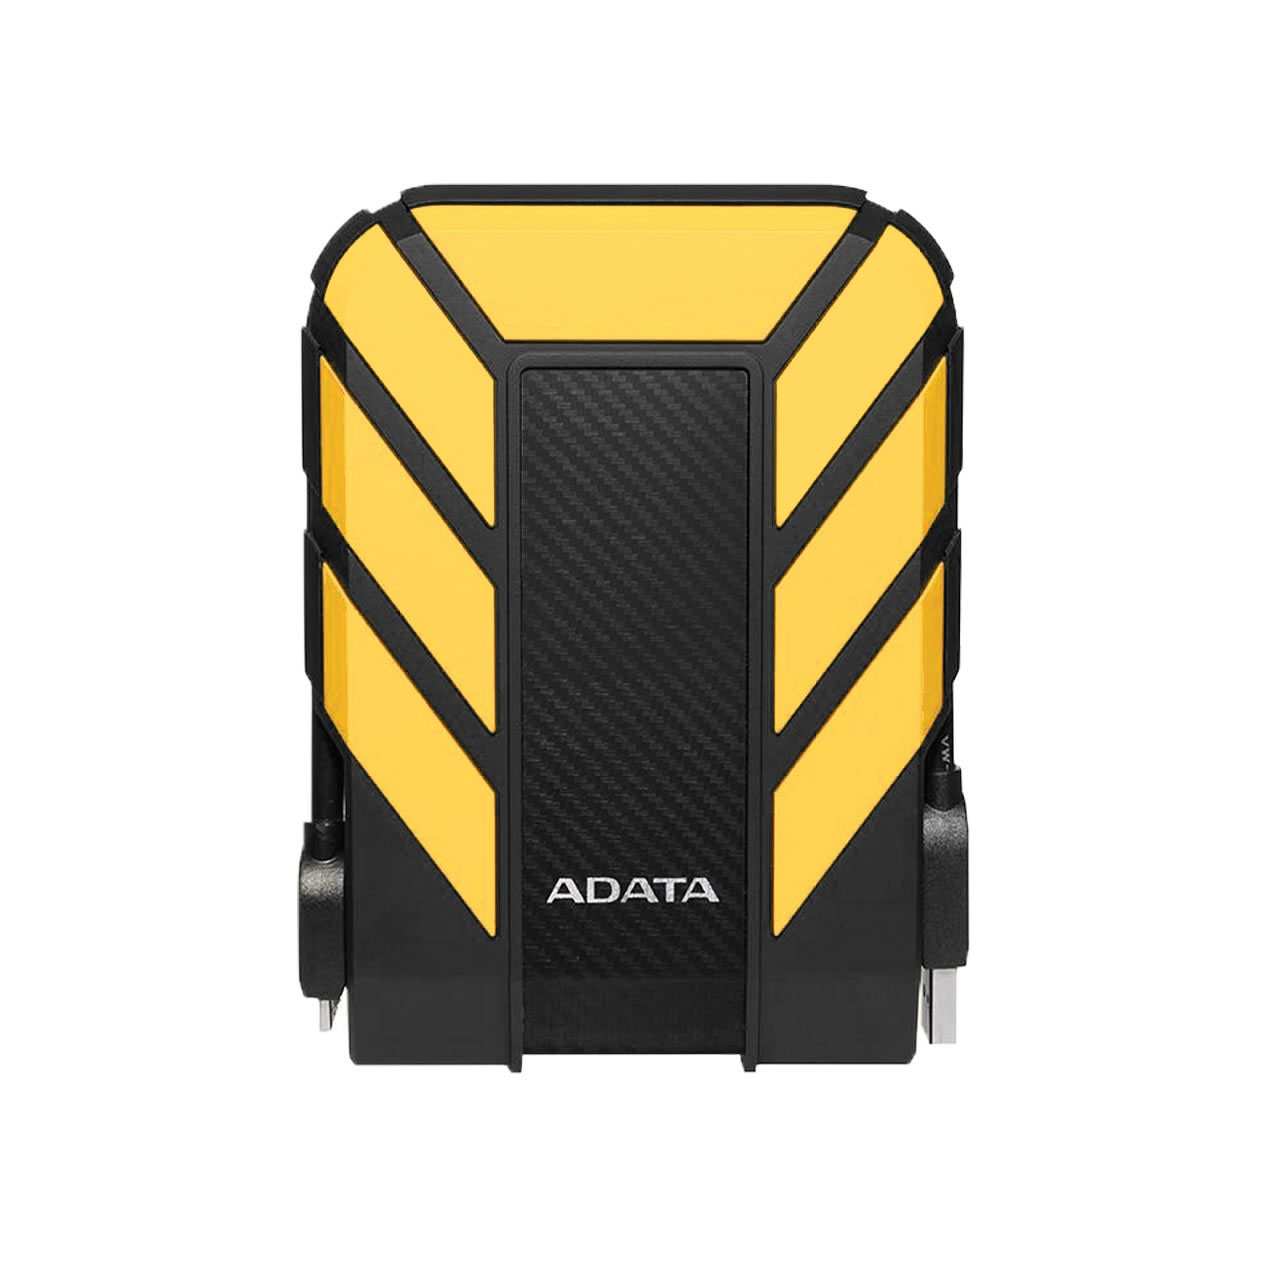 هارد اکسترنال ADATA مدل HD710 Pro ظرفیت 2TB - زرد (گارانتی شرکت آونگ